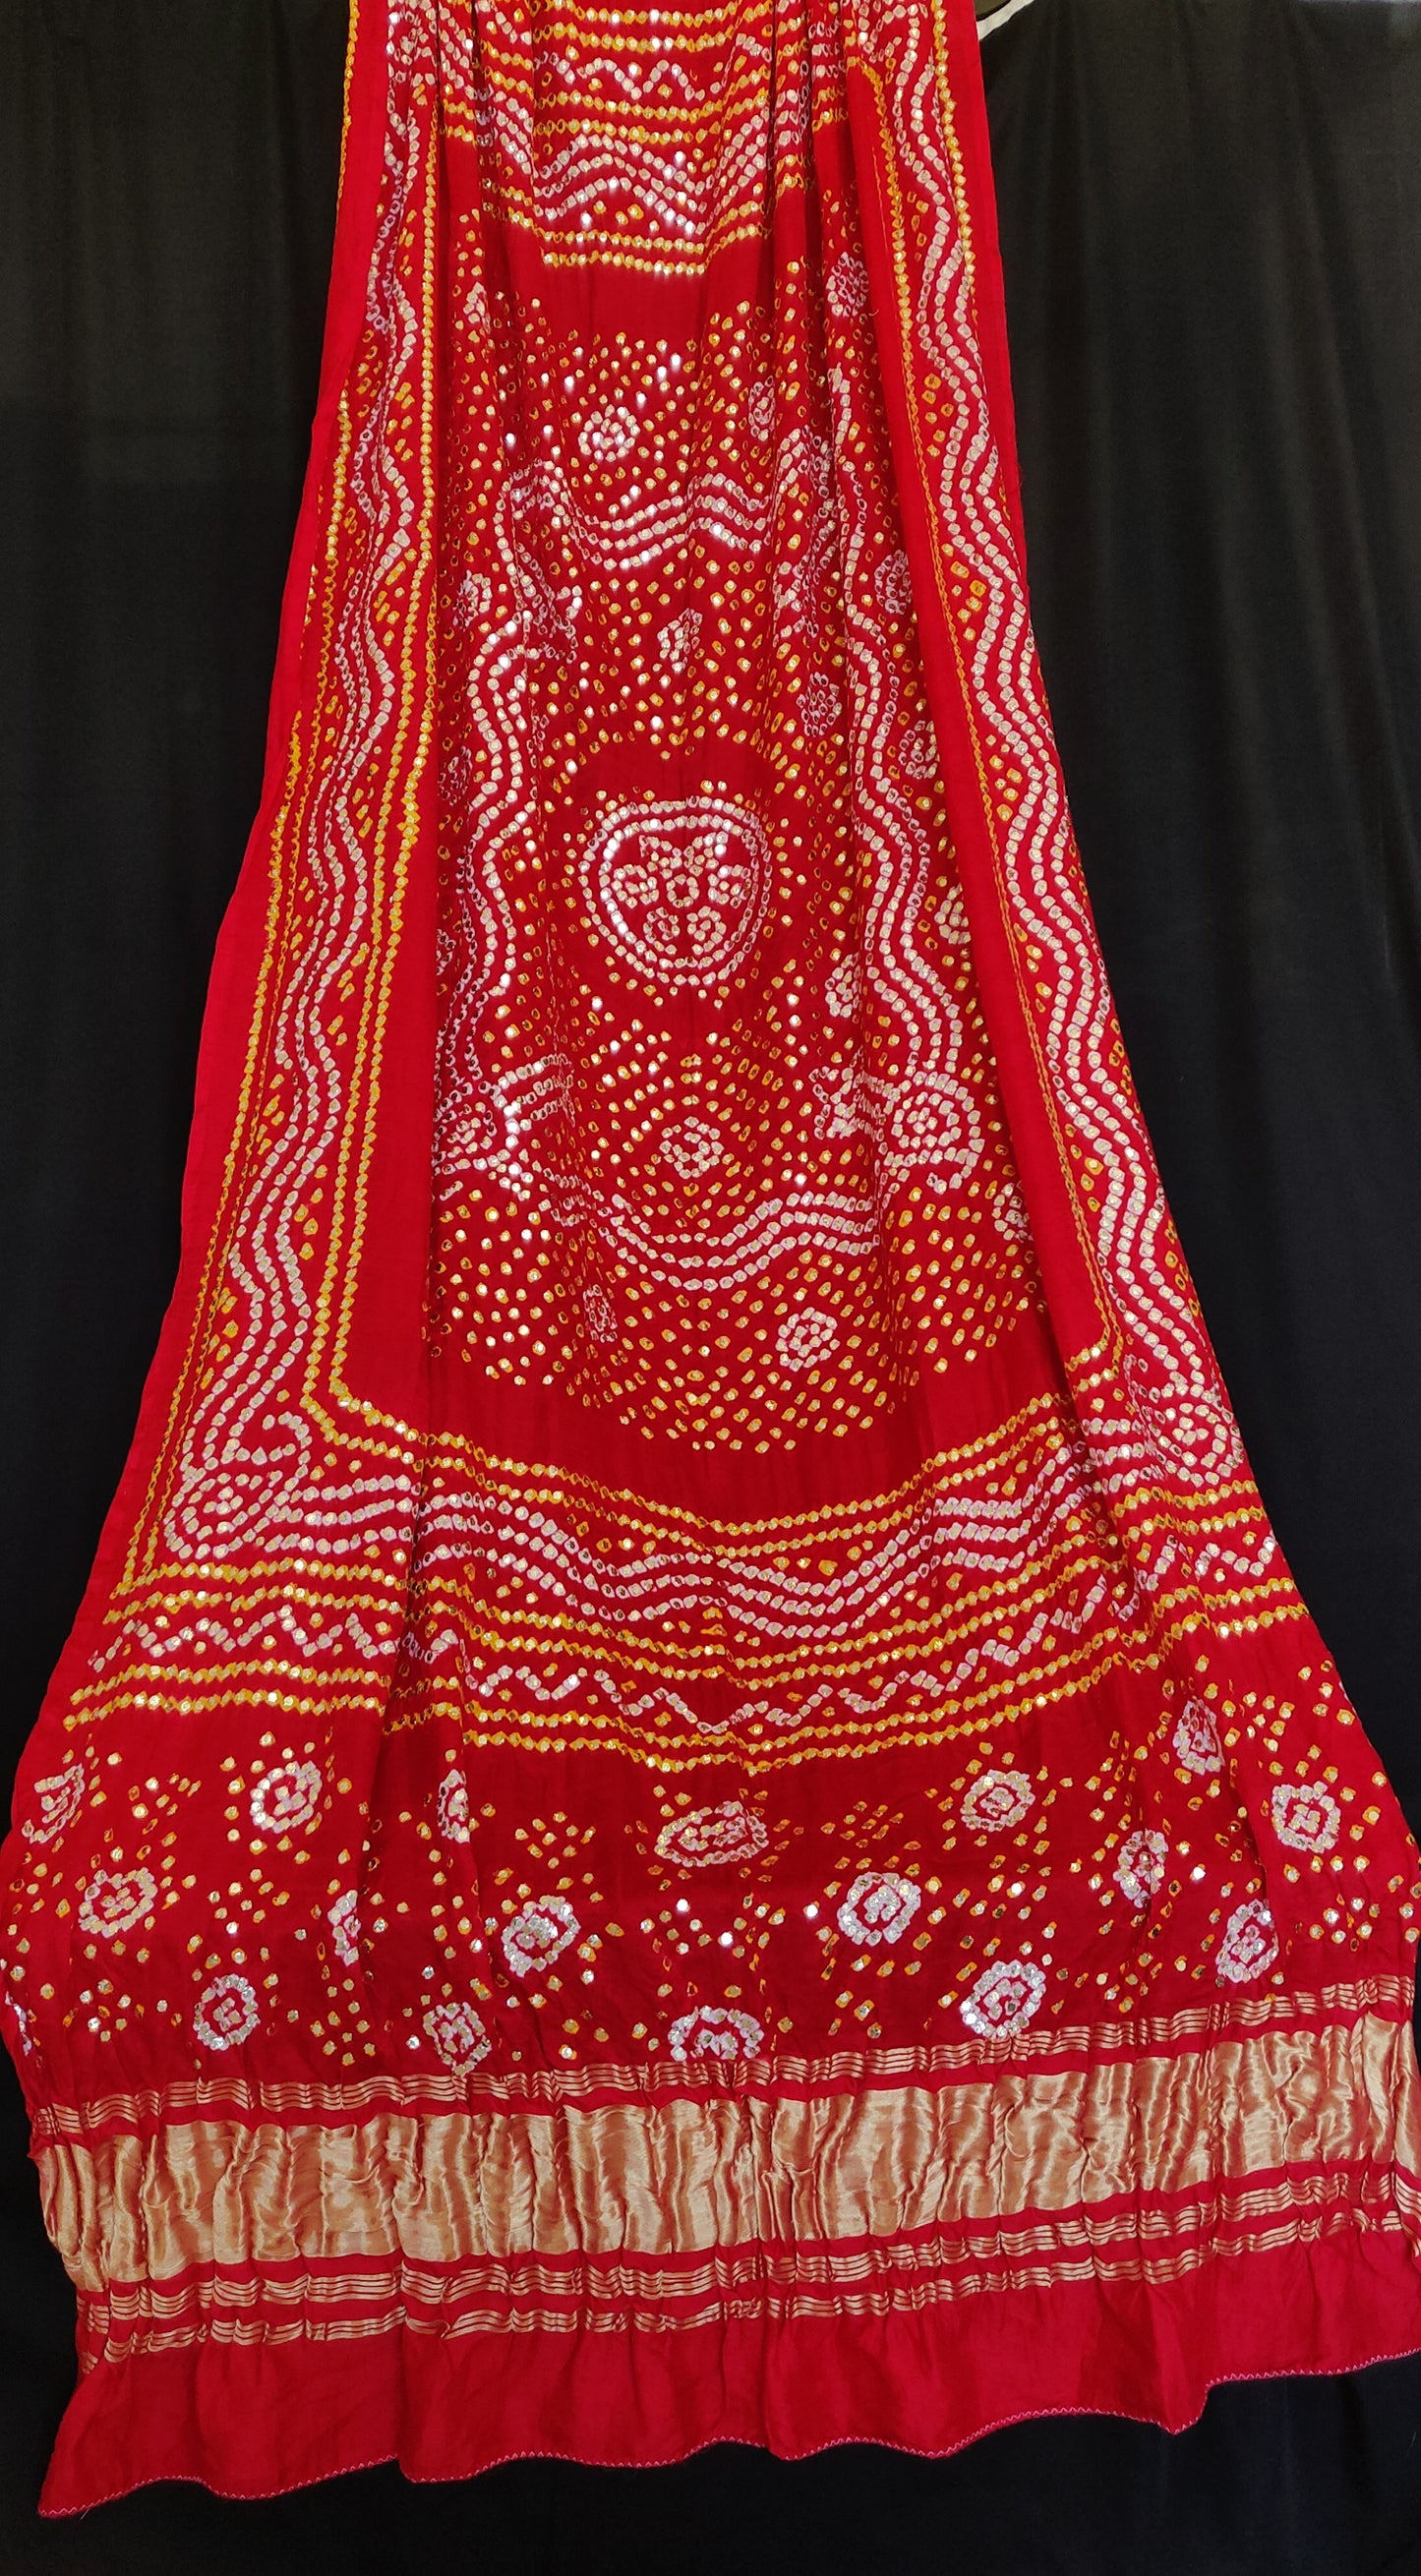 Red gajji silk bandhej dupatta with heavy mukaish work